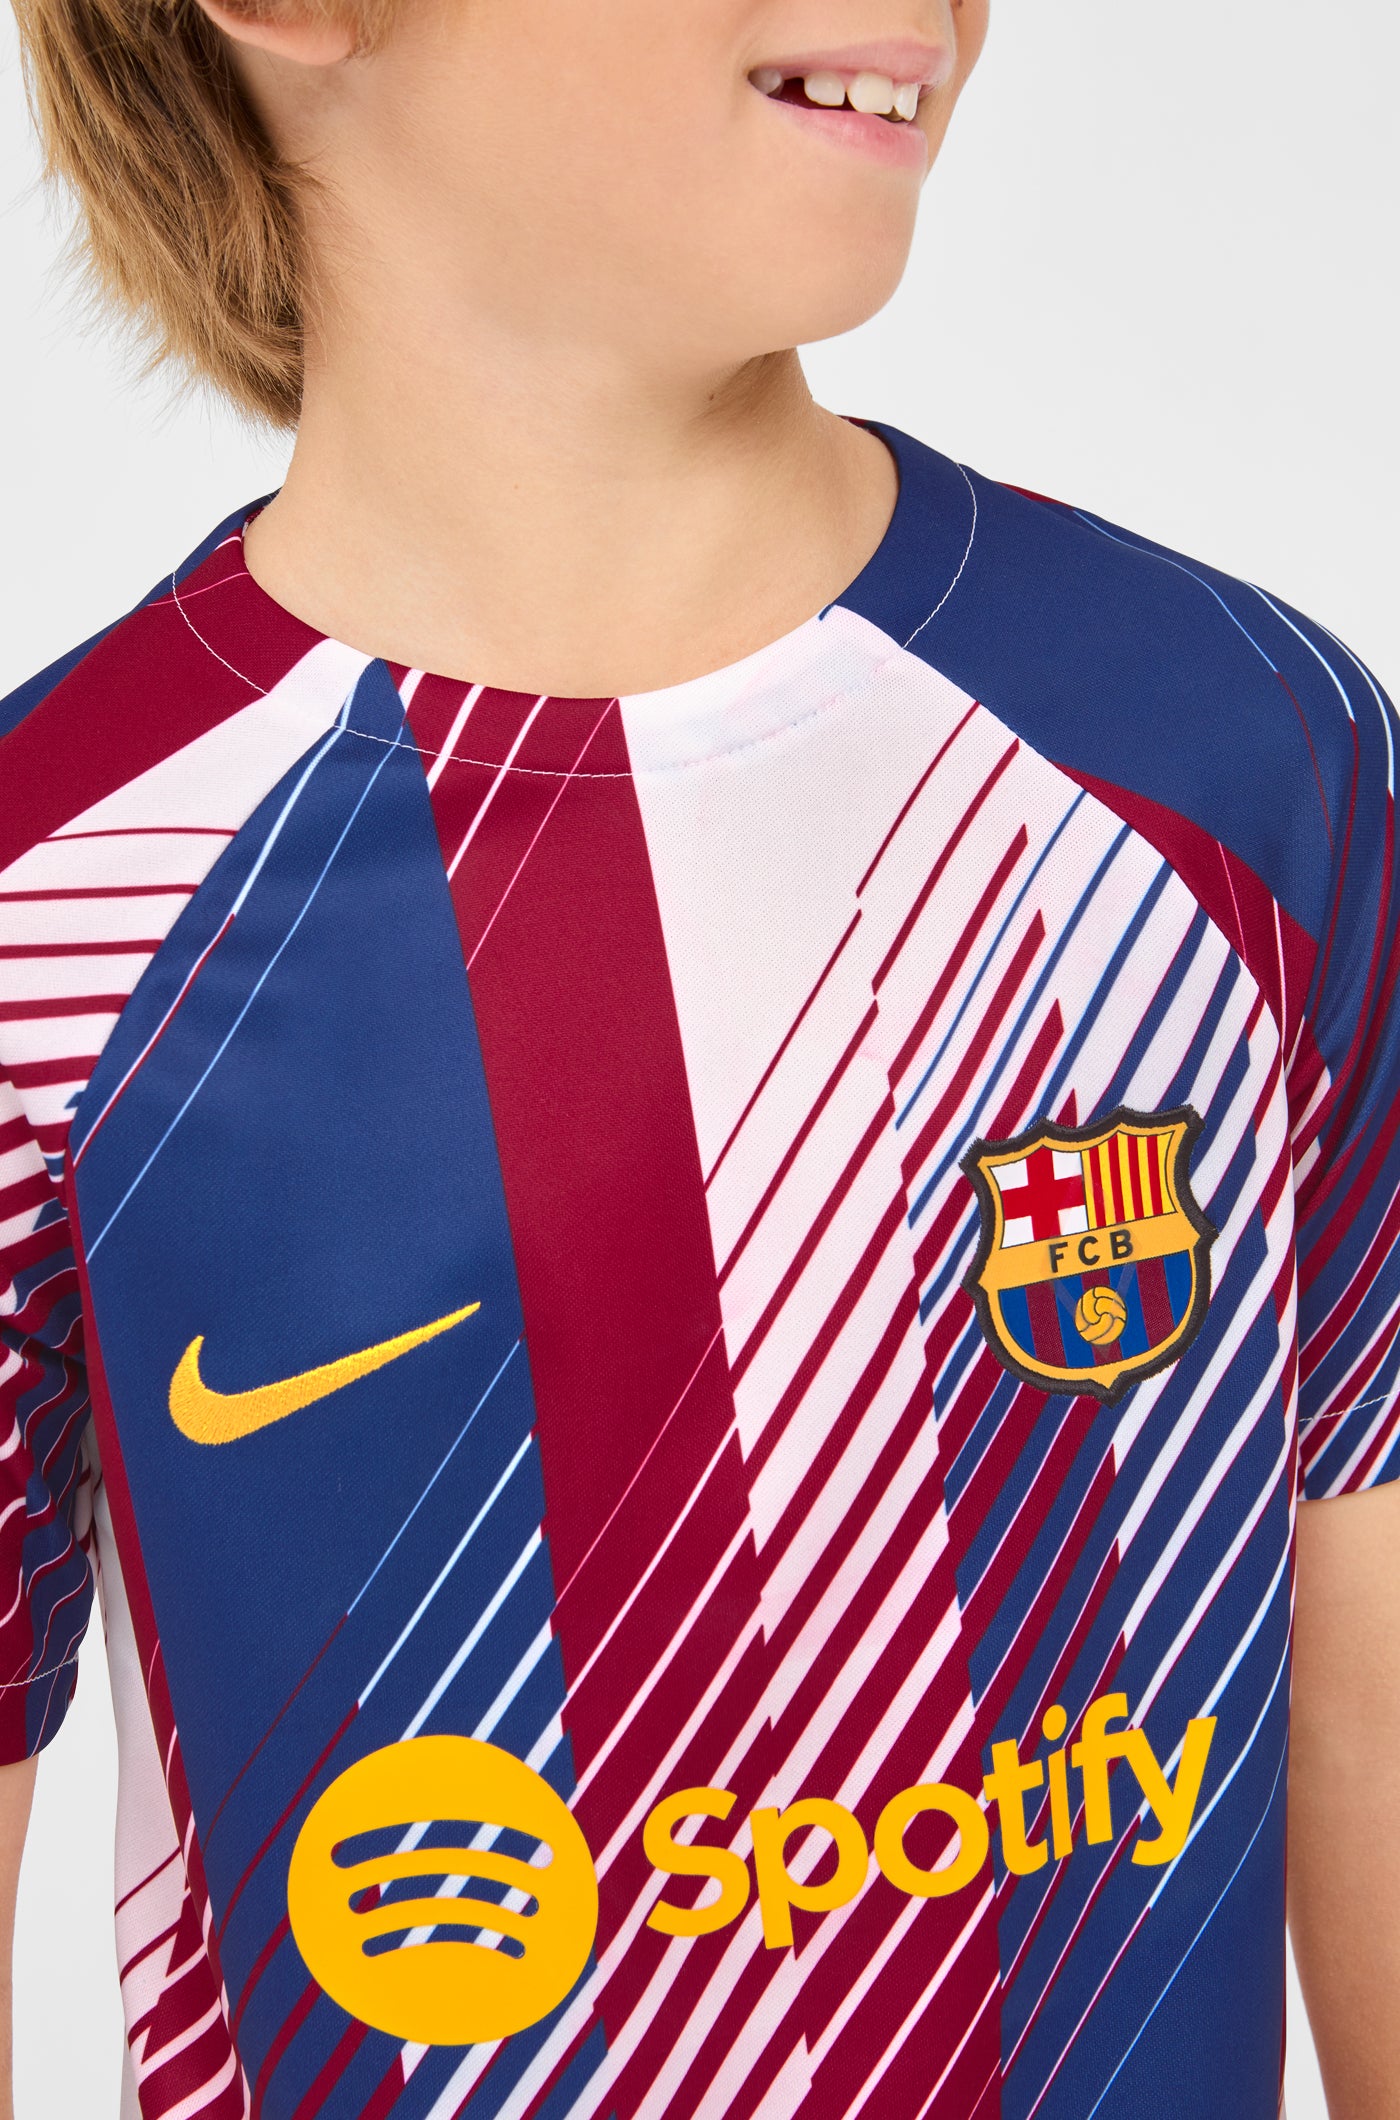 FC Barcelona Chándal 23/24 niño - talla 116-6 años - temporada 23/24 -  Producto oficial - chándal para entrenamiento de fútbol: : Moda